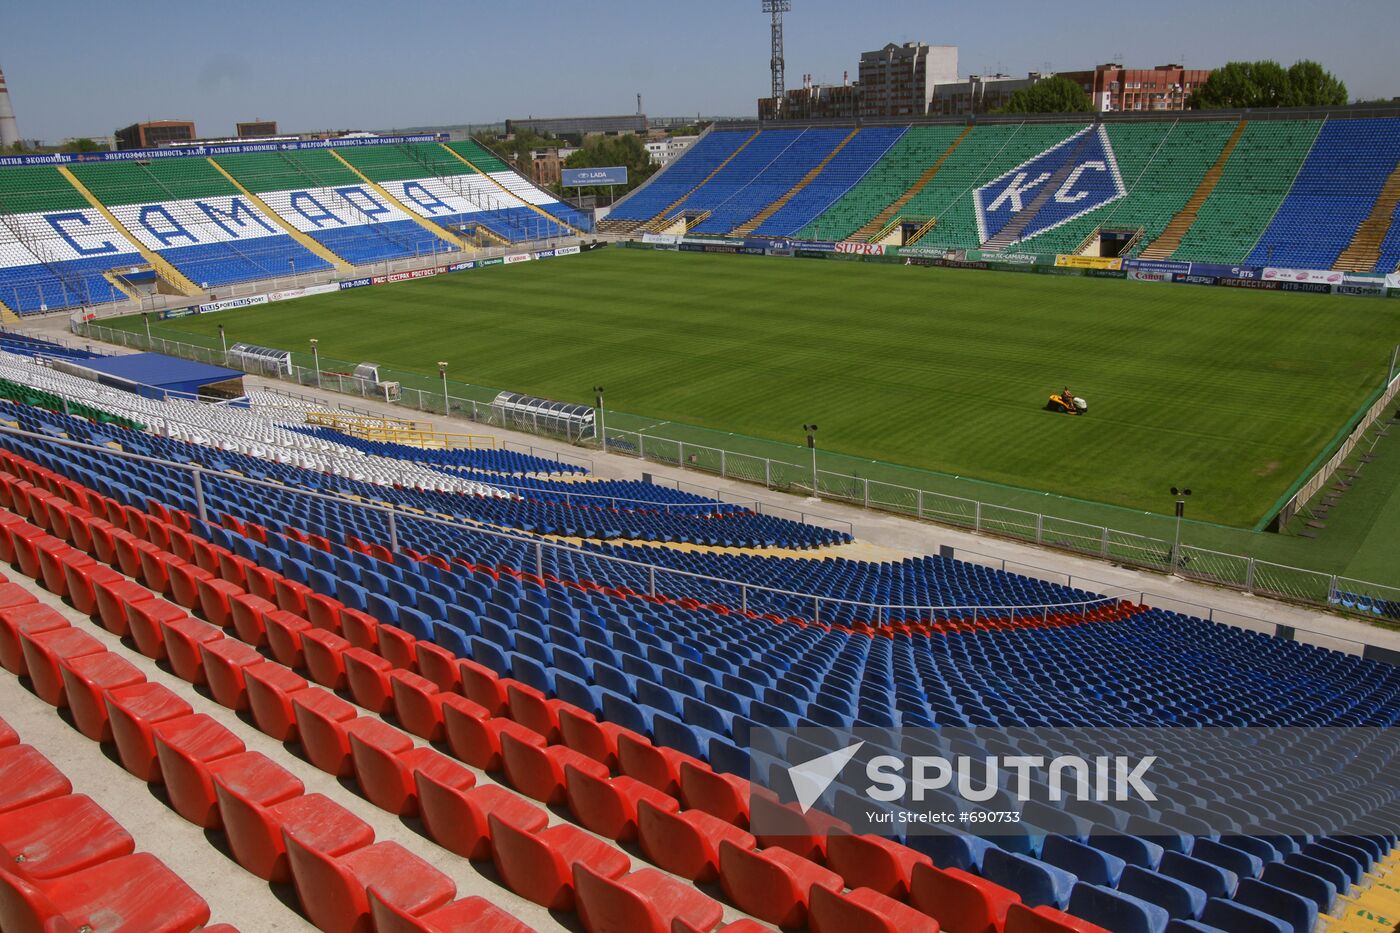 Metallurg Stadium in Samara